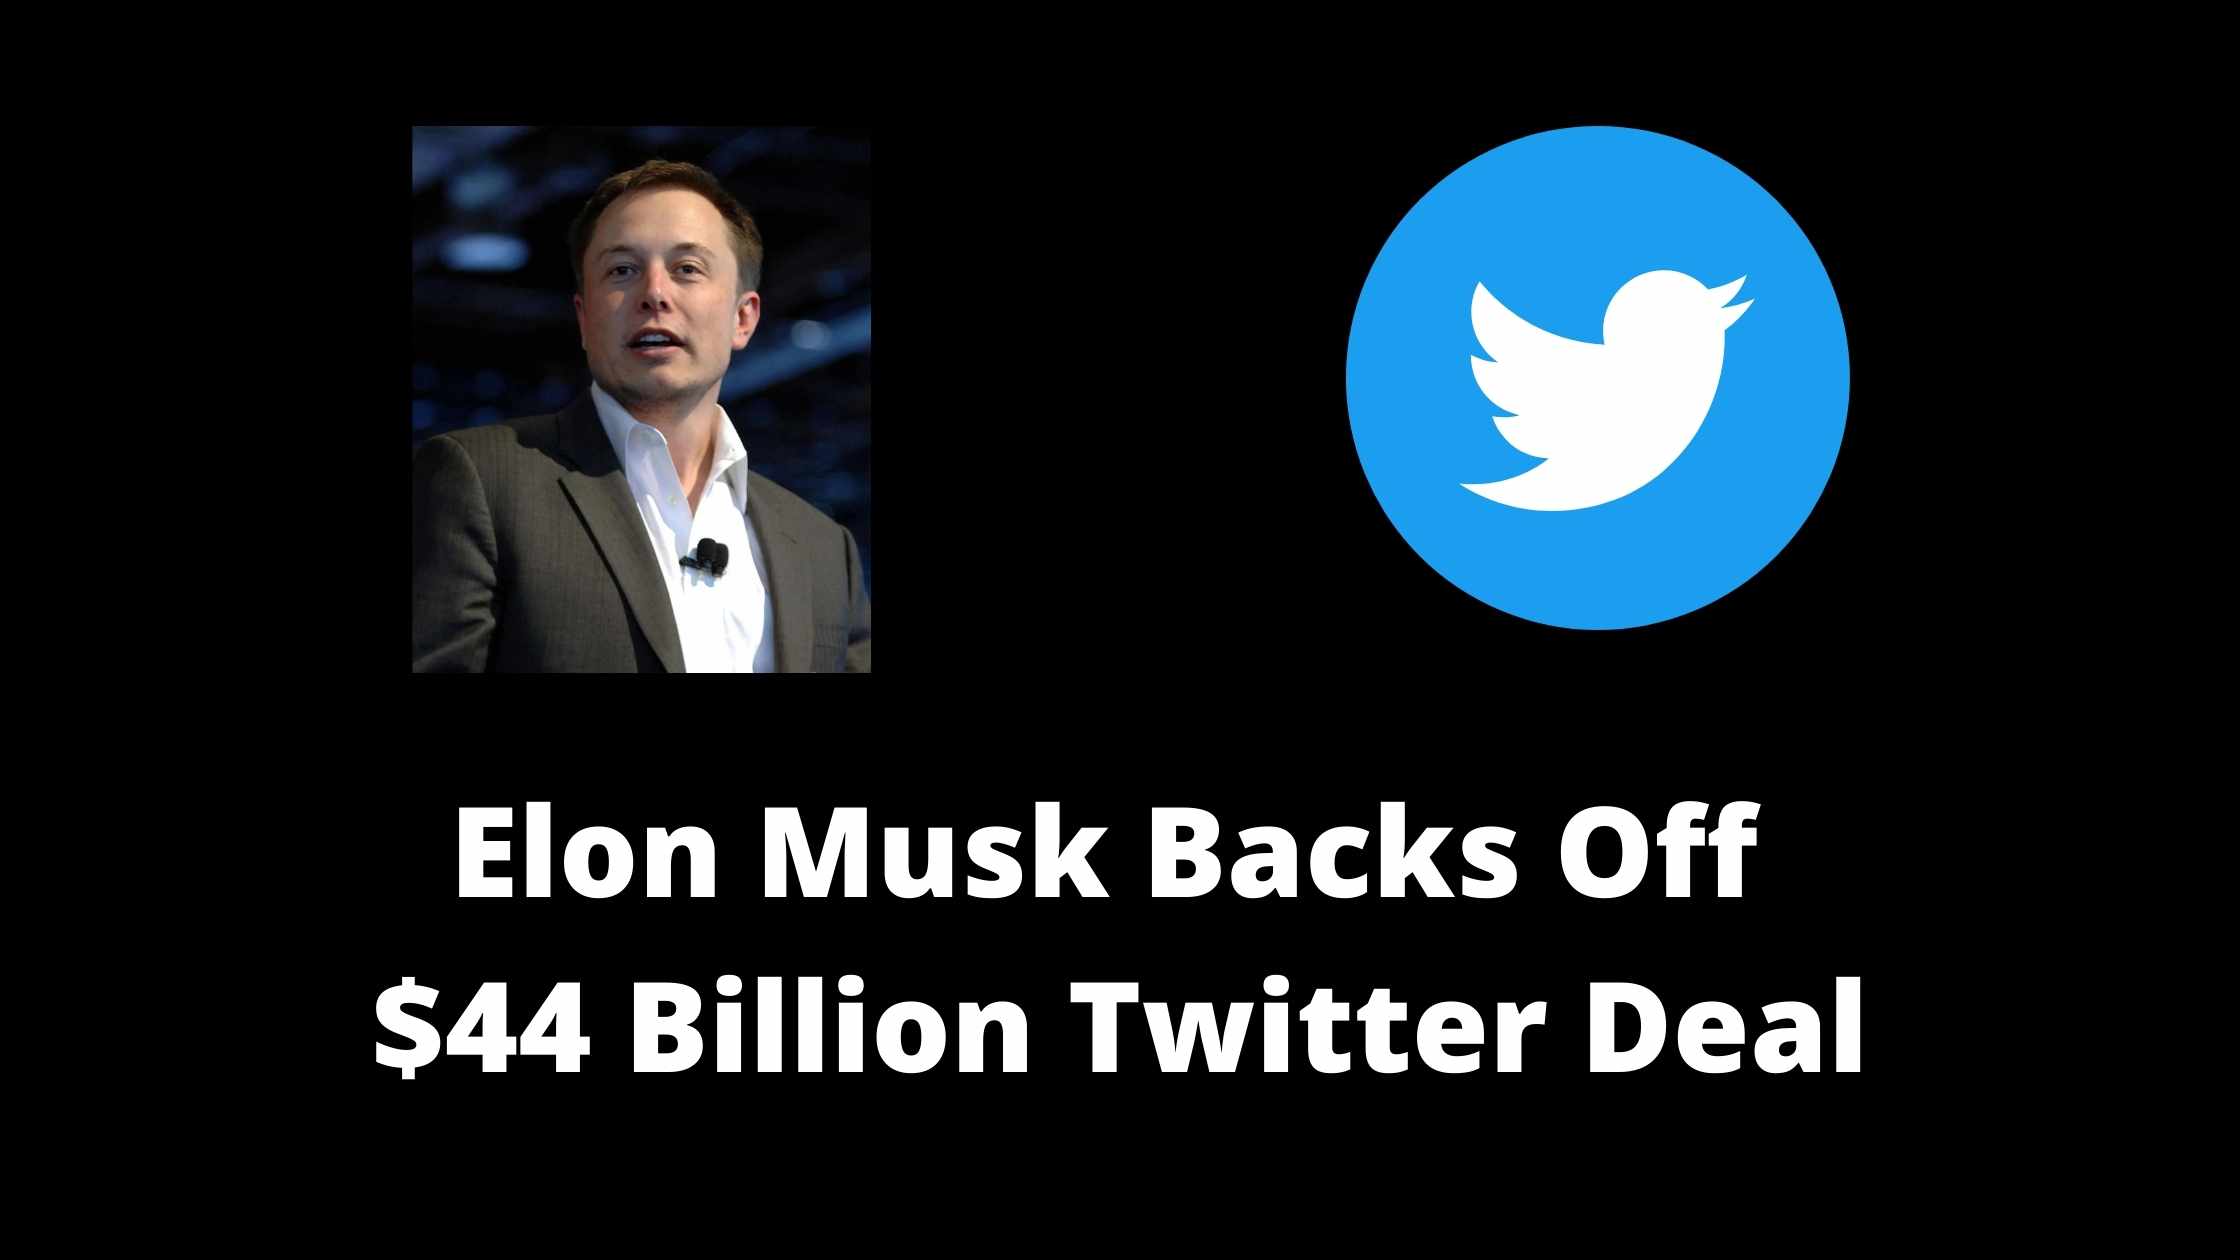 Elon Musk Twitter Deal news